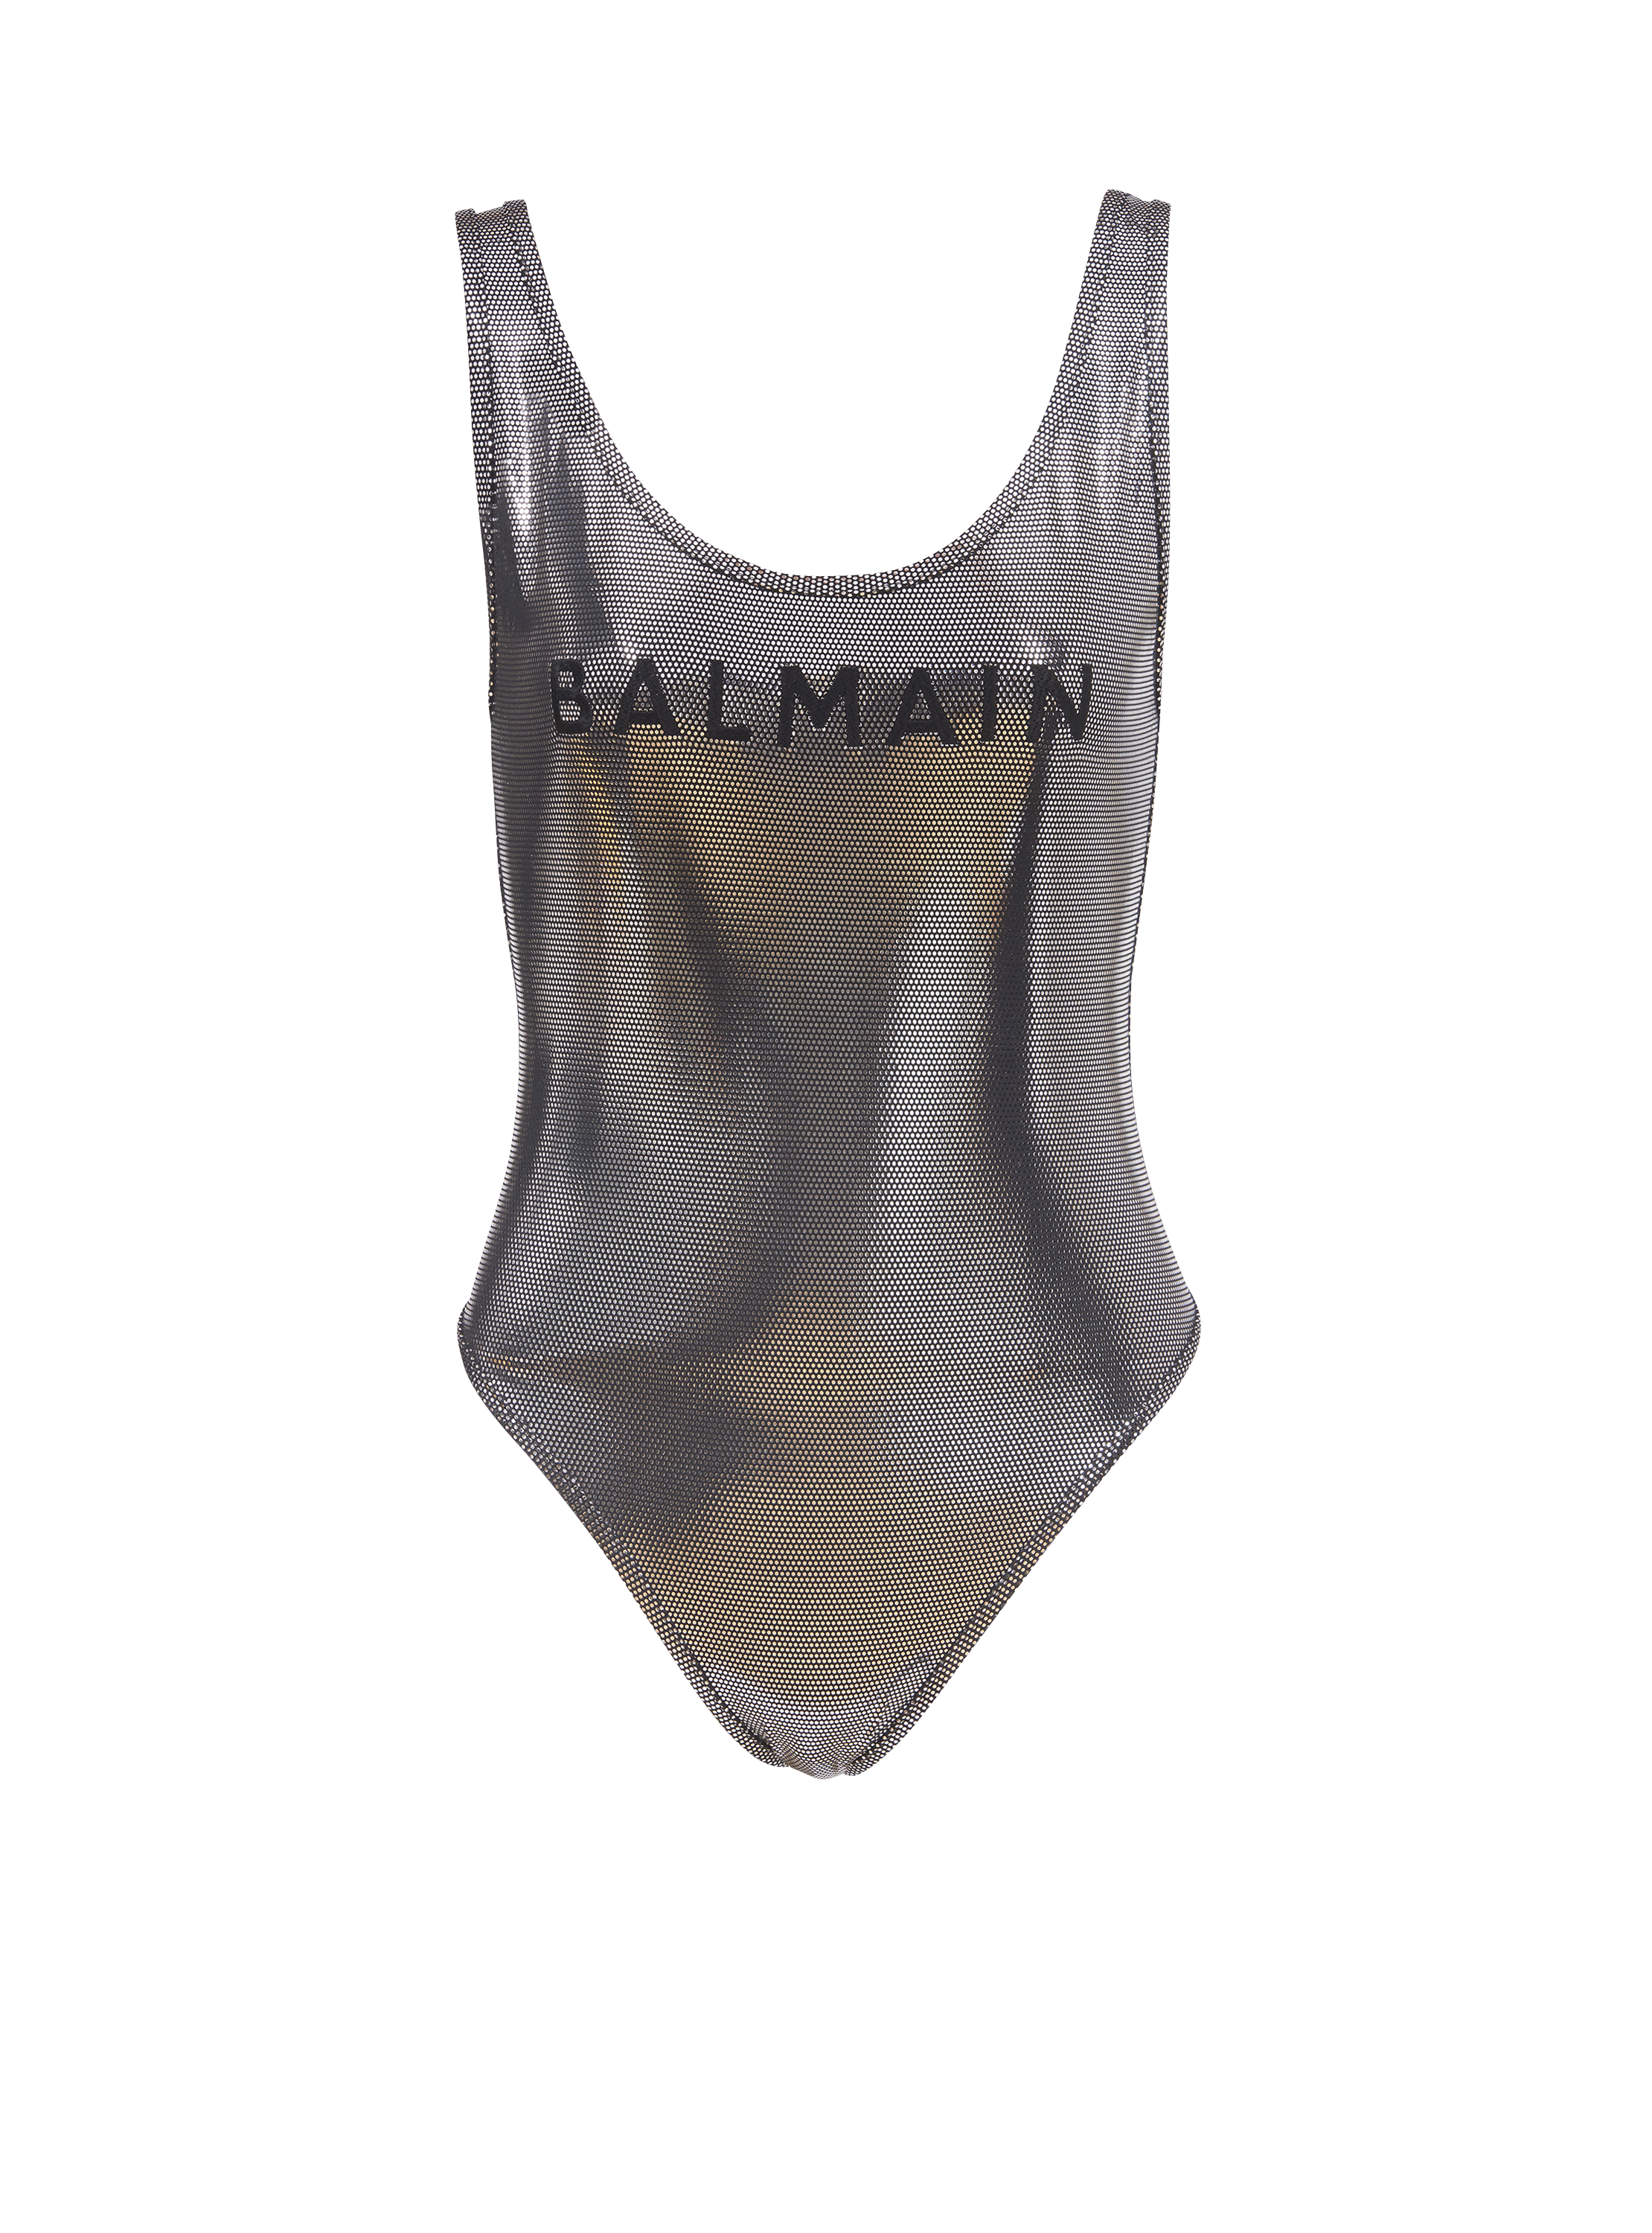 Swimsuit with Balmain logos